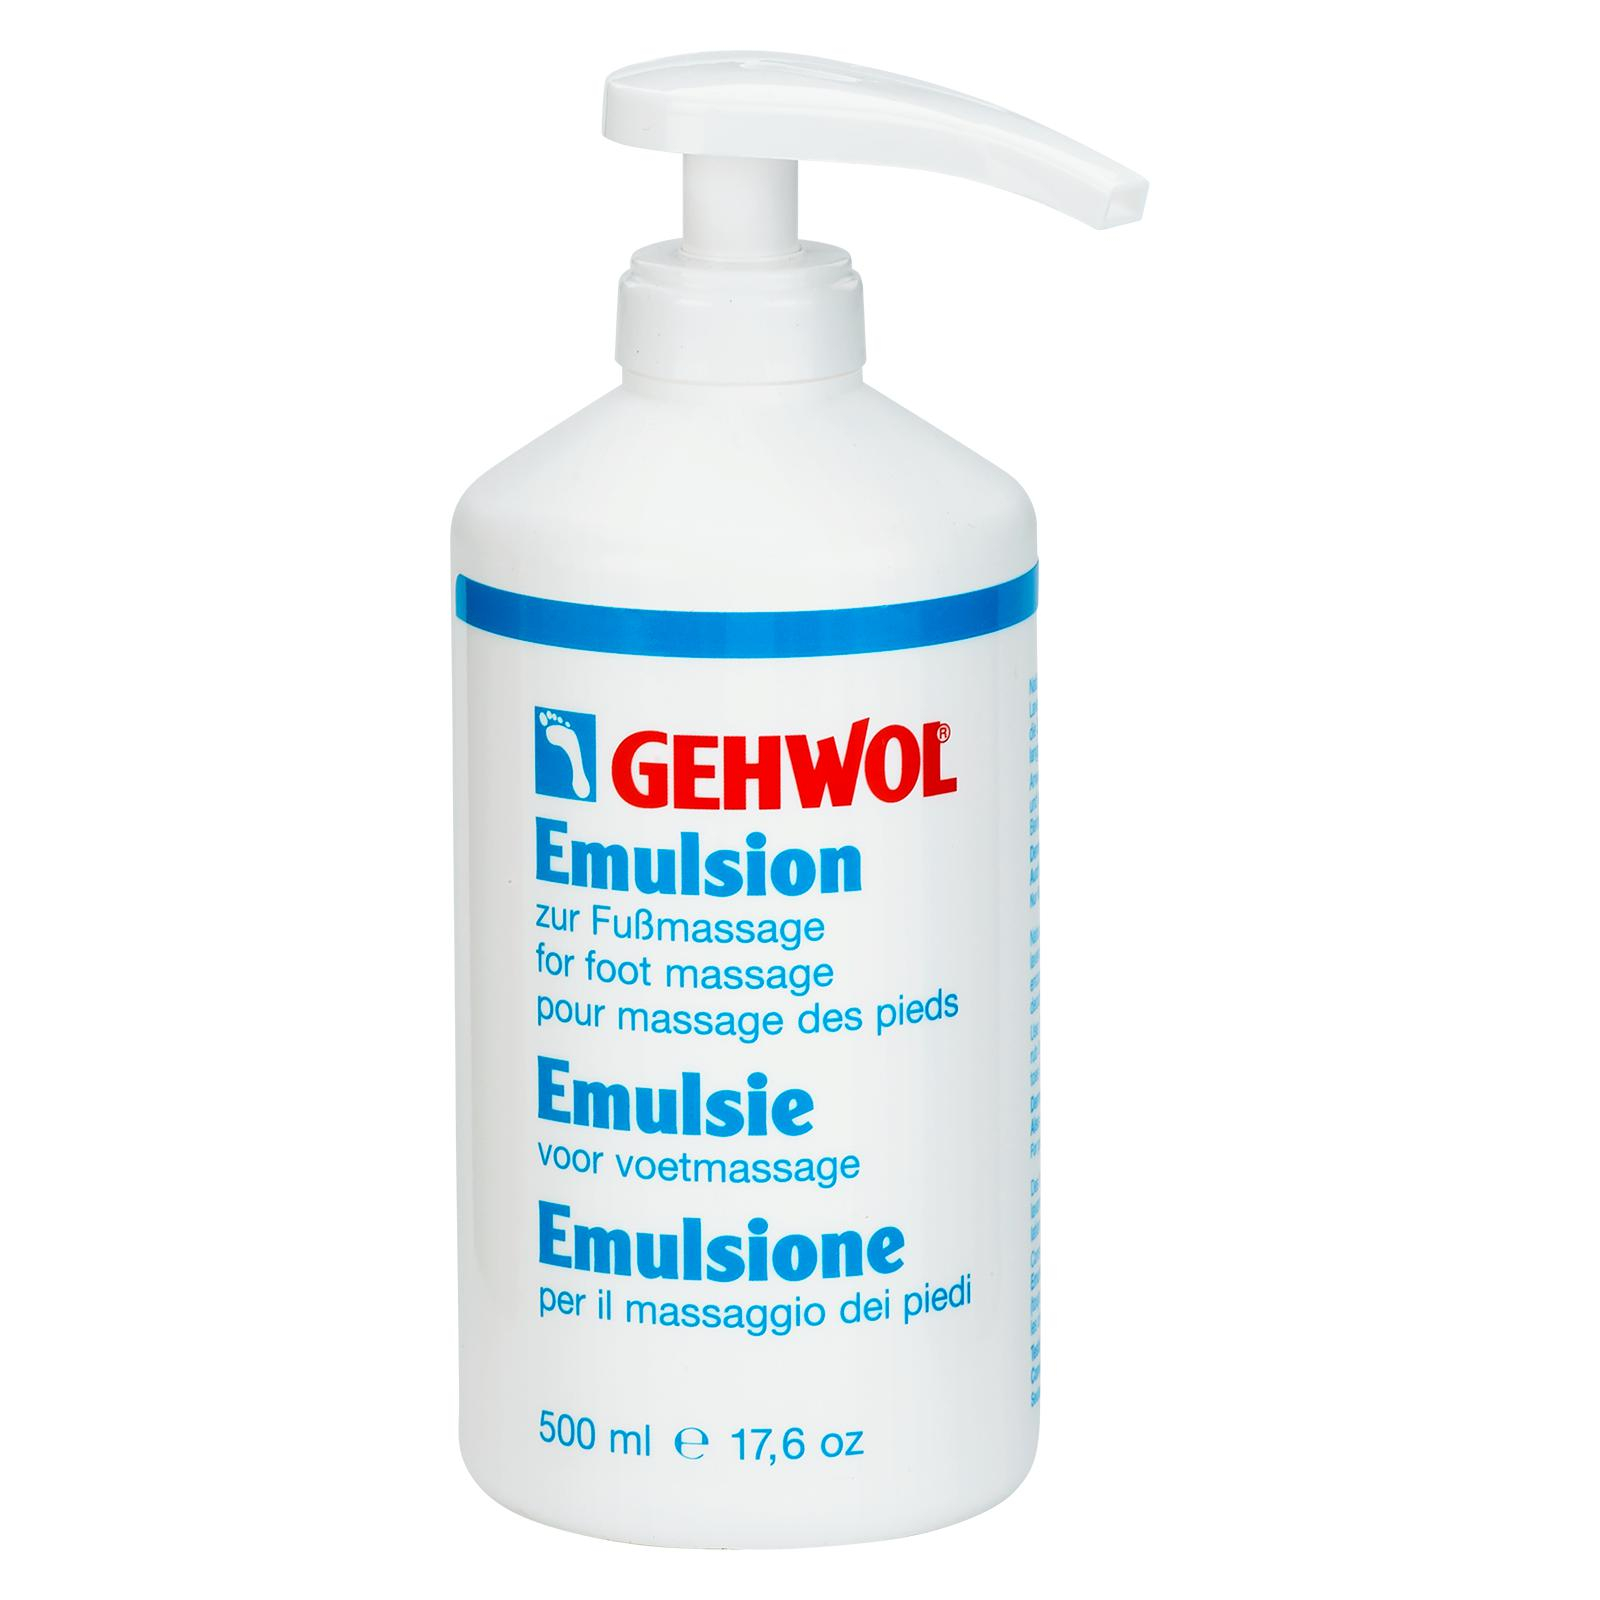 GEHWOL Emulsion zur Fußmassage 500 ml DOSE mit Spender